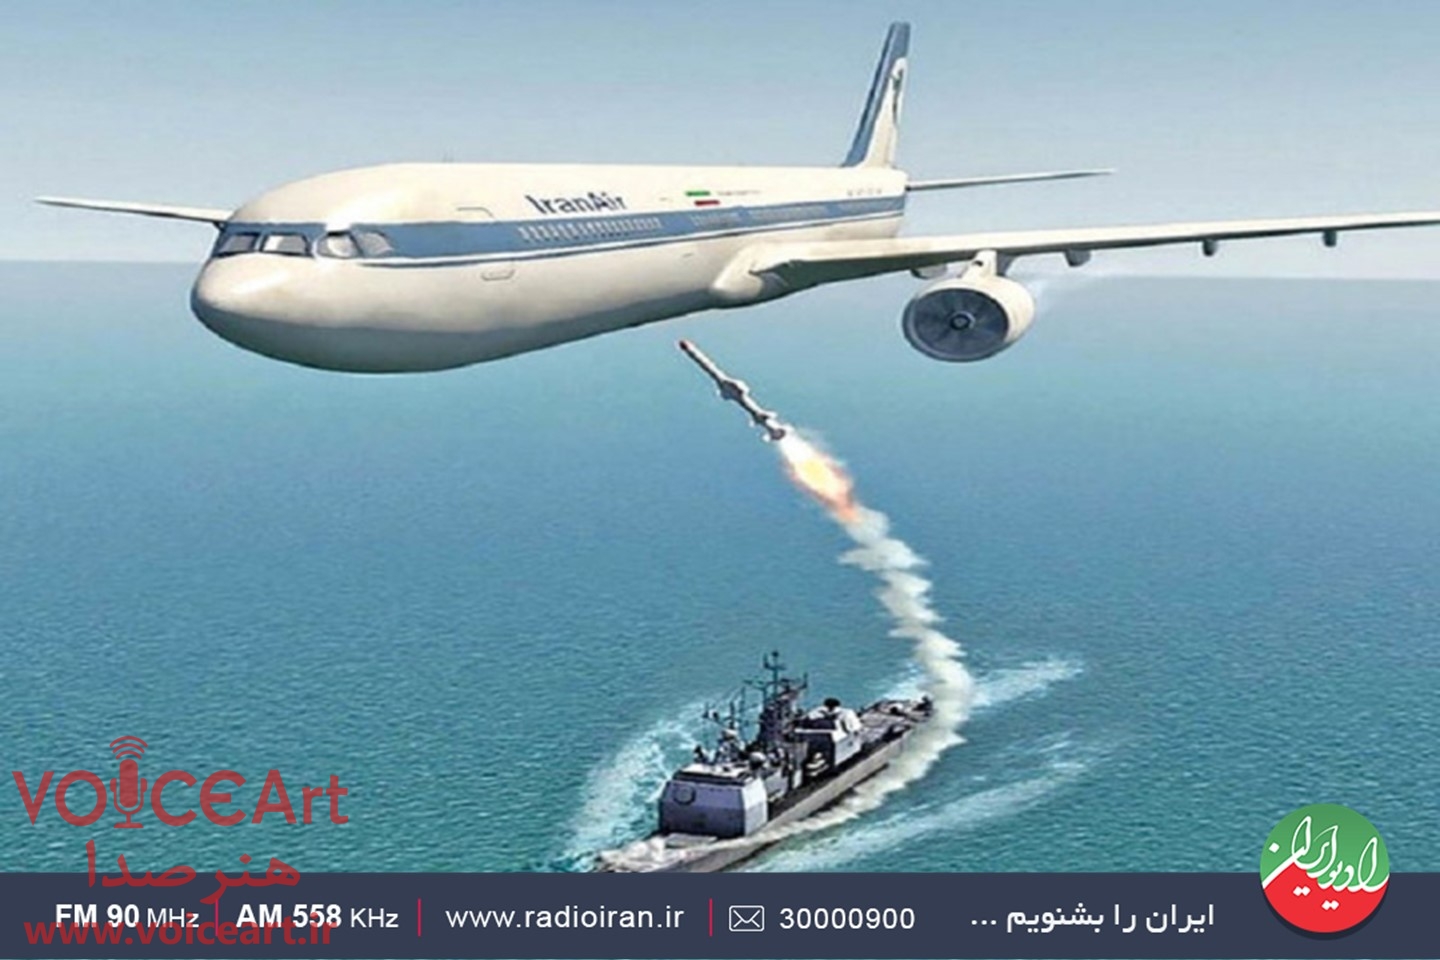 واکاوی اهداف سرنگونی هواپیمای مسافربری ایران در «مدال» رادیو ایران